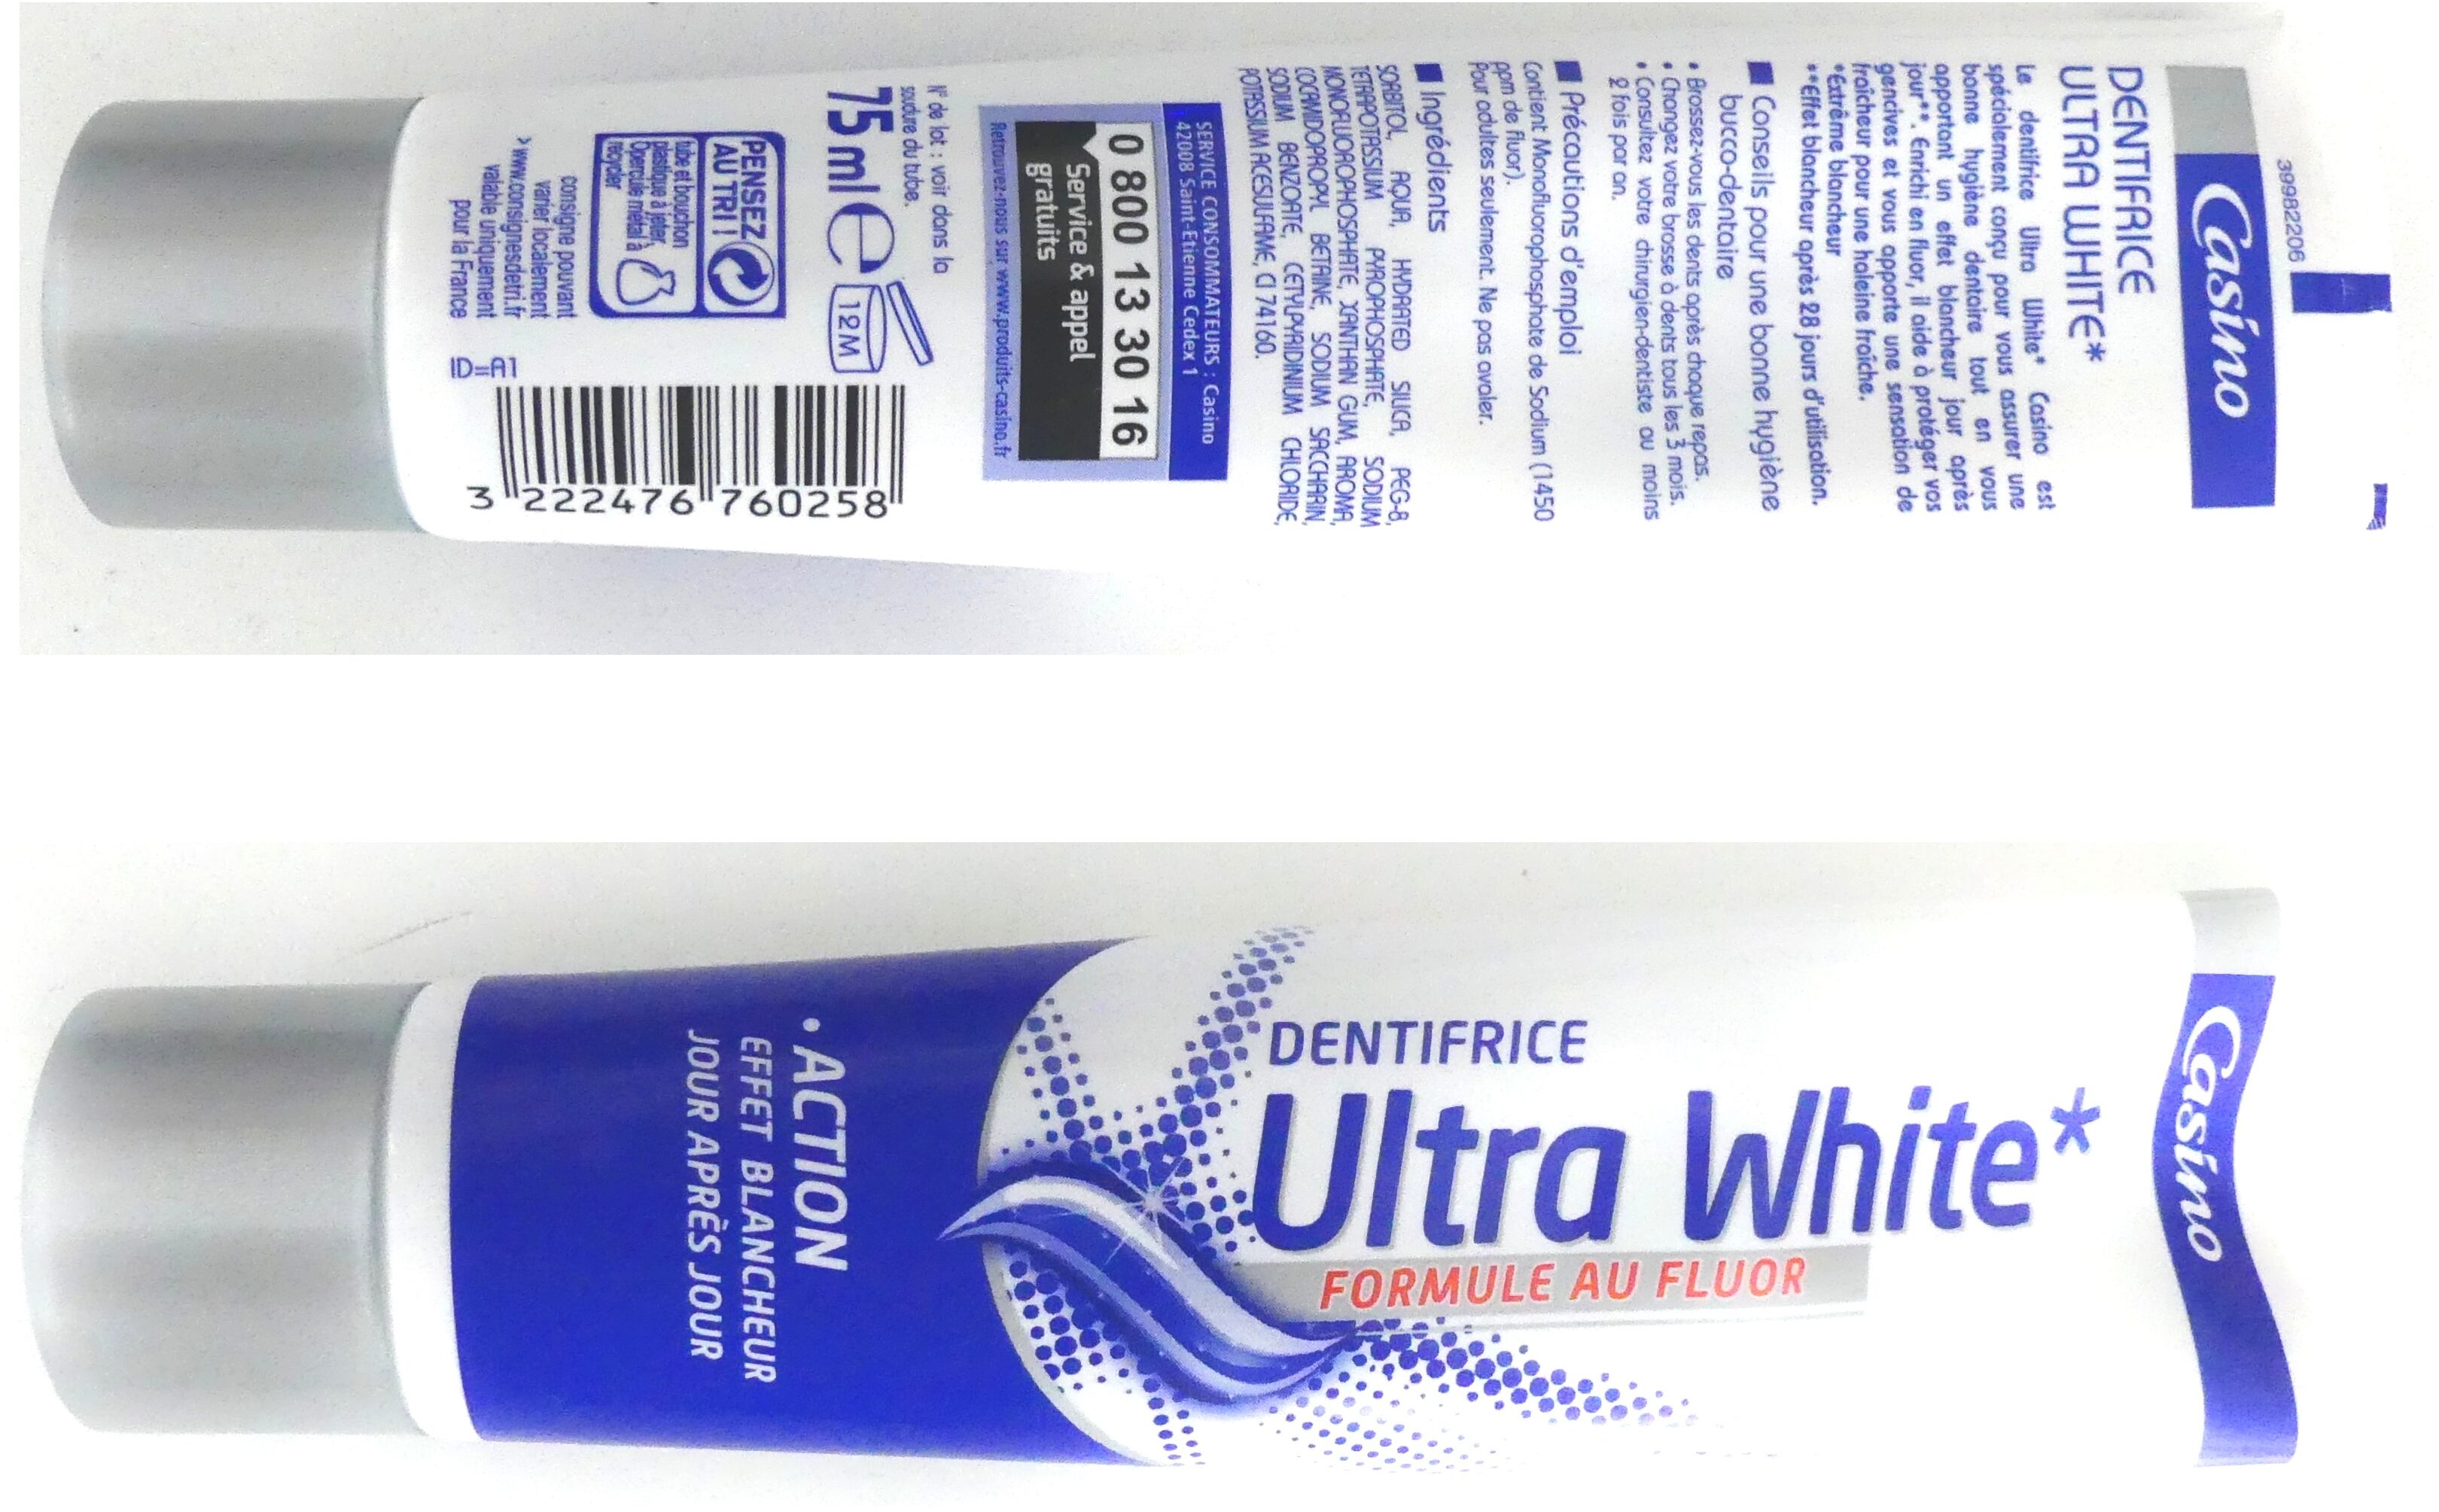 Dentifrice ultra white - Produit - fr